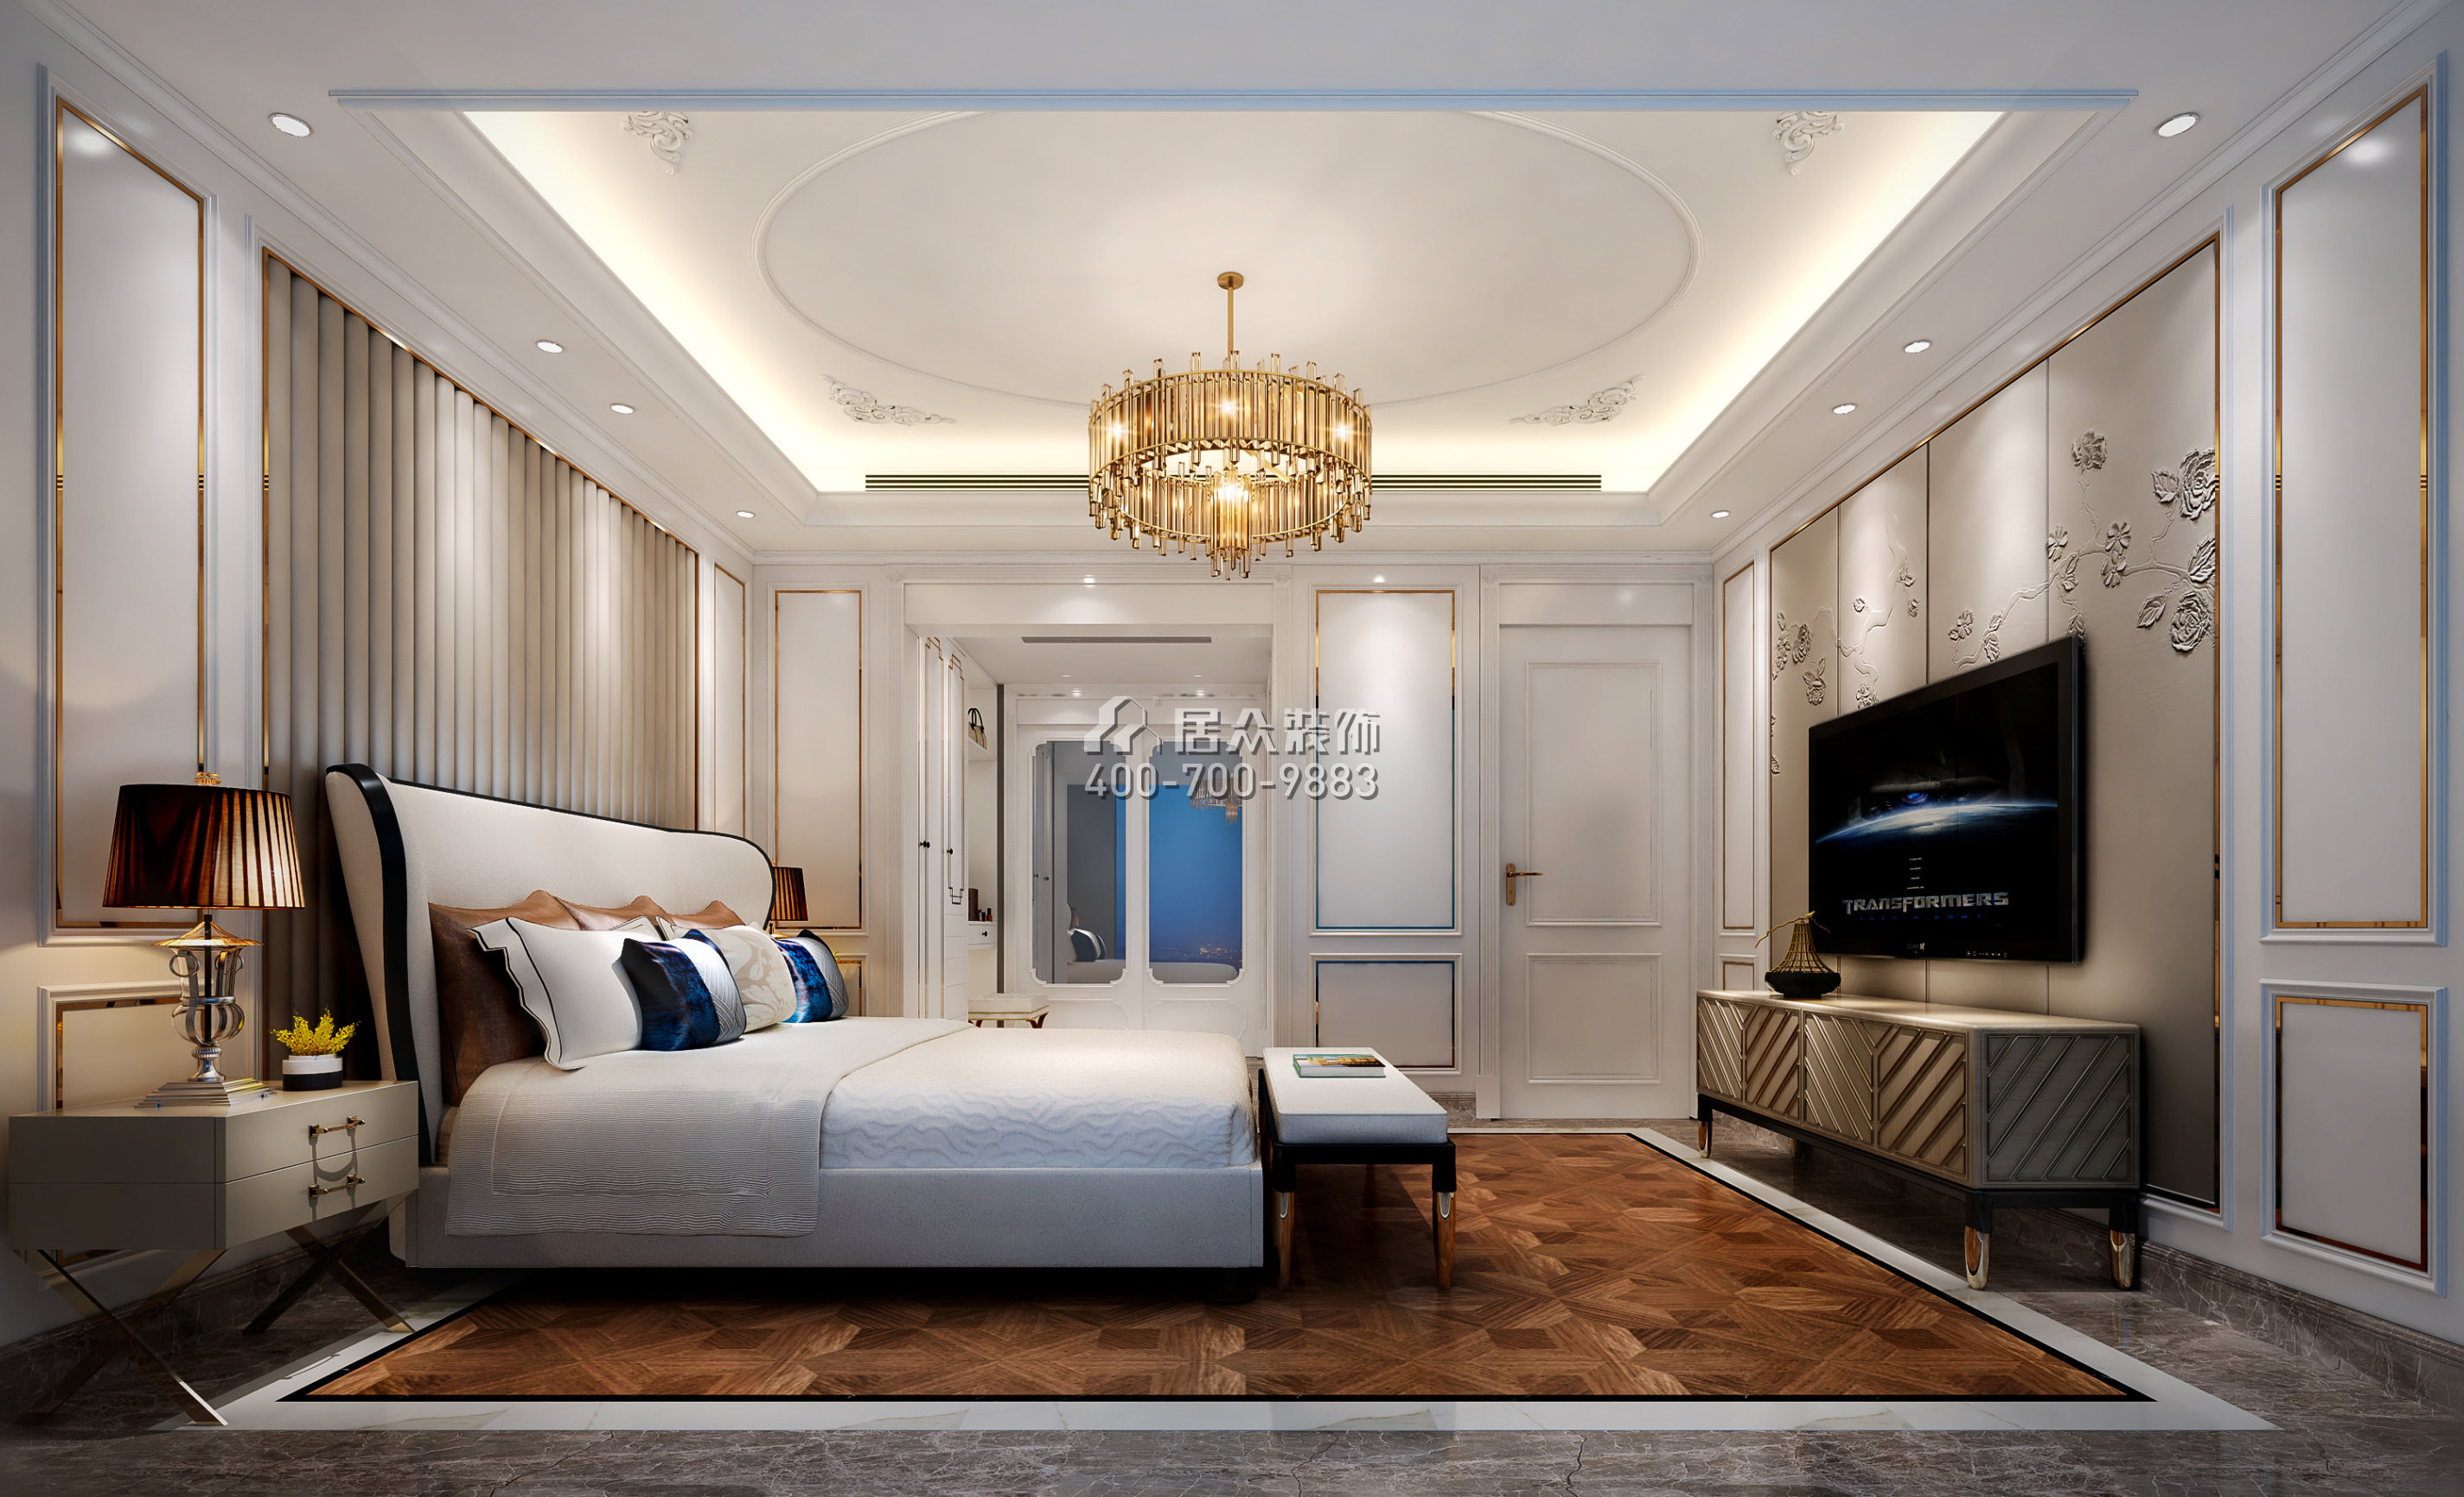 曦灣天馥210平方米歐式風格平層戶型臥室裝修效果圖